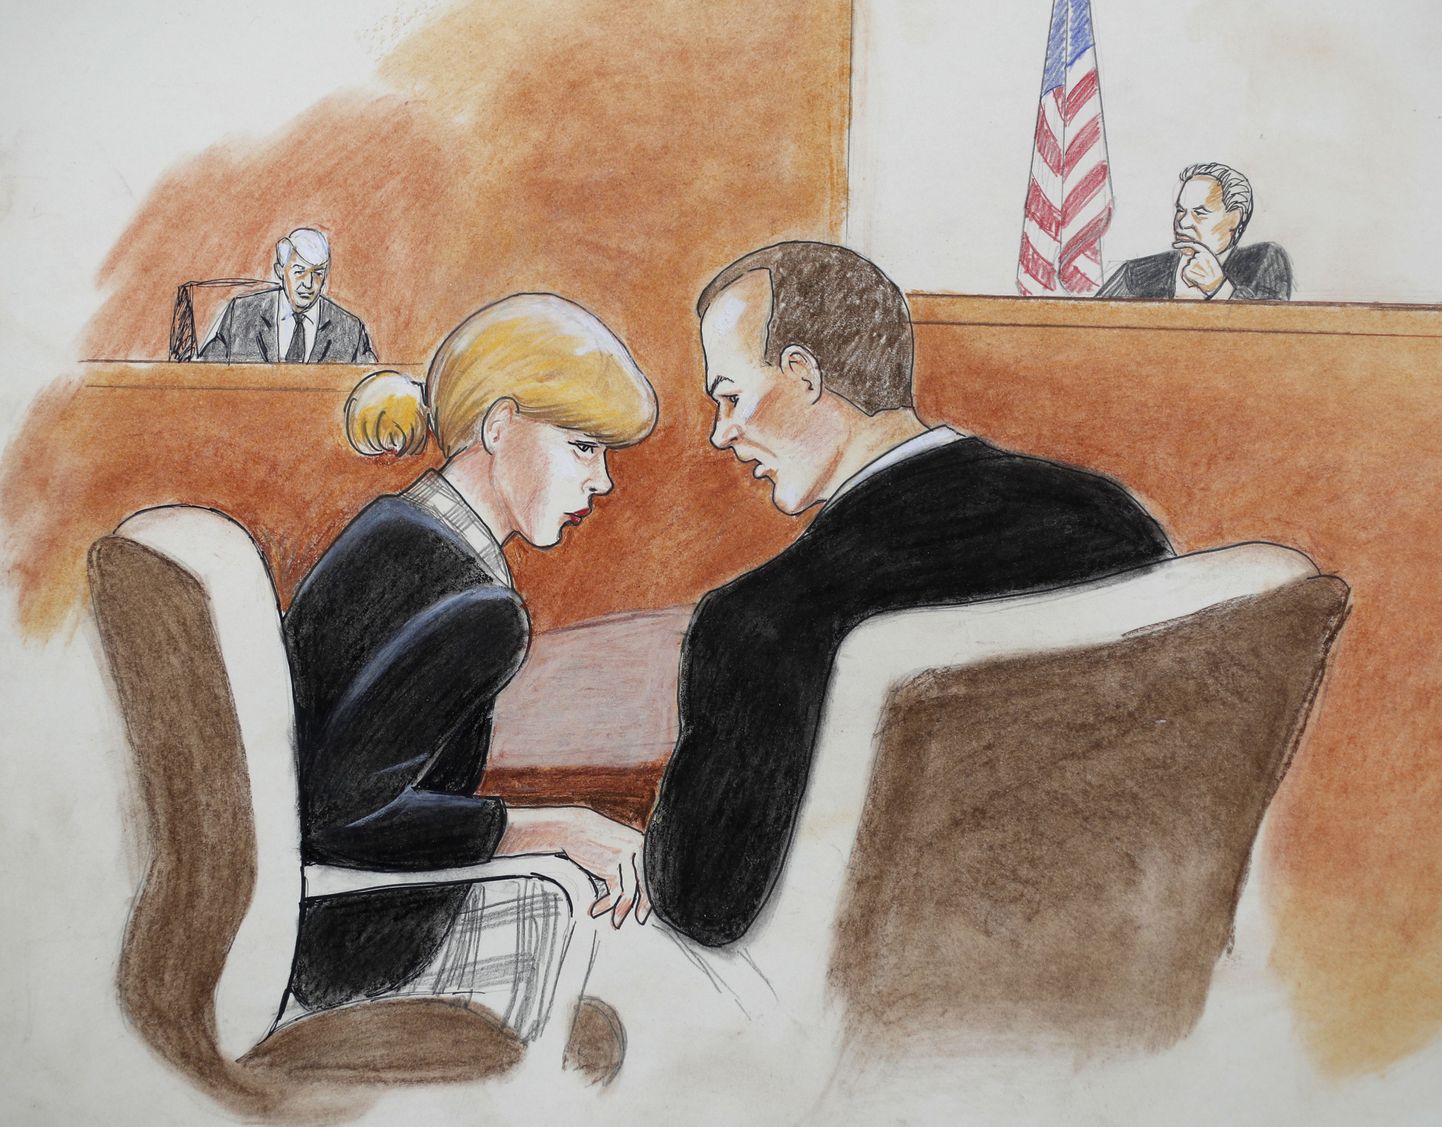 Kohtukunstnik Jeff Kandyba joonistus Taylor Swiftist kohtusaalis 8. augustil. Taustal on tunnistusi andmas 
endine raadiosaatejuht David Mueller